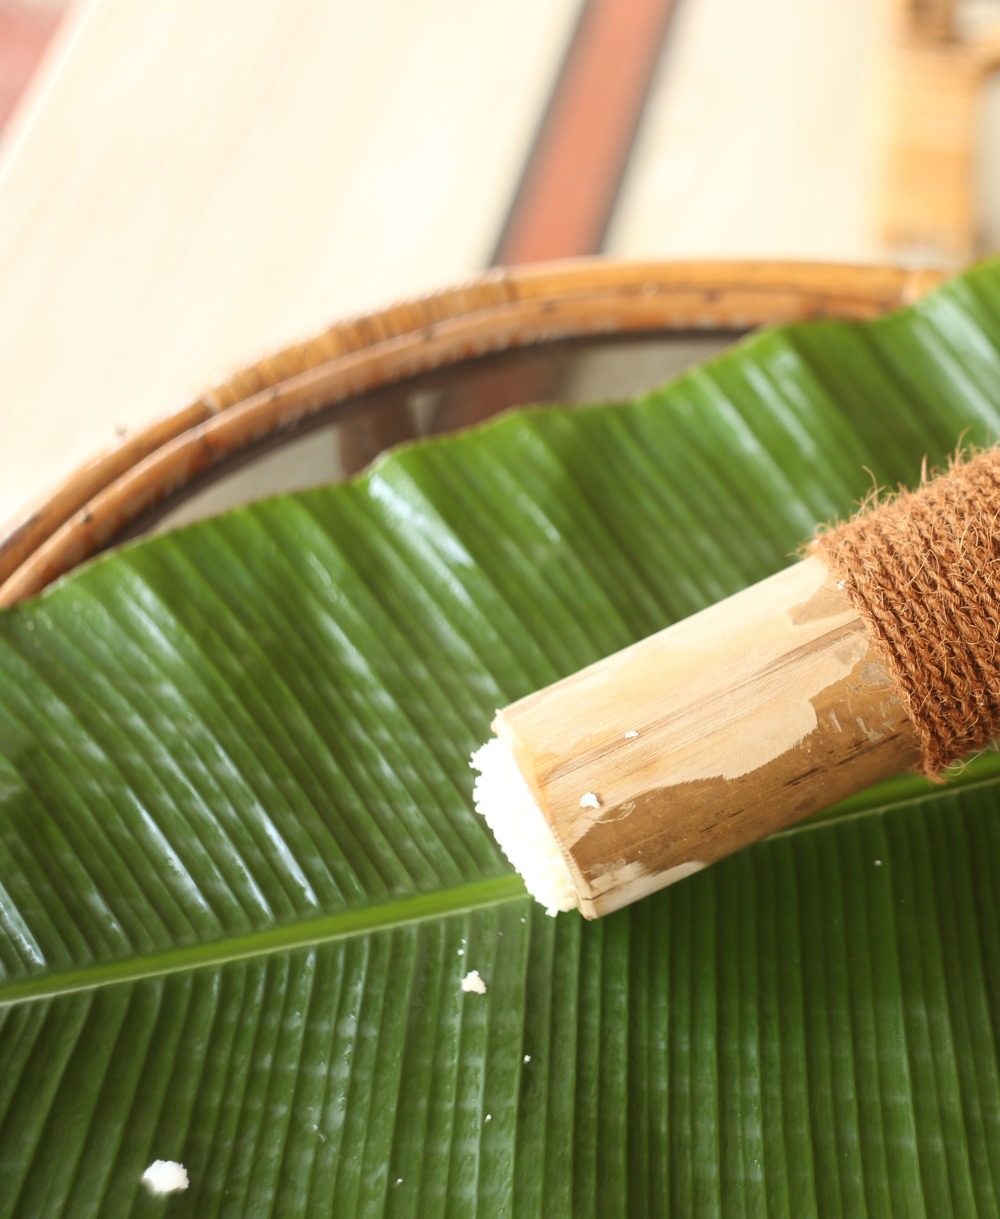 osłona z bambusa, osłona rury z bambusa, bambus do osłonięcia rur